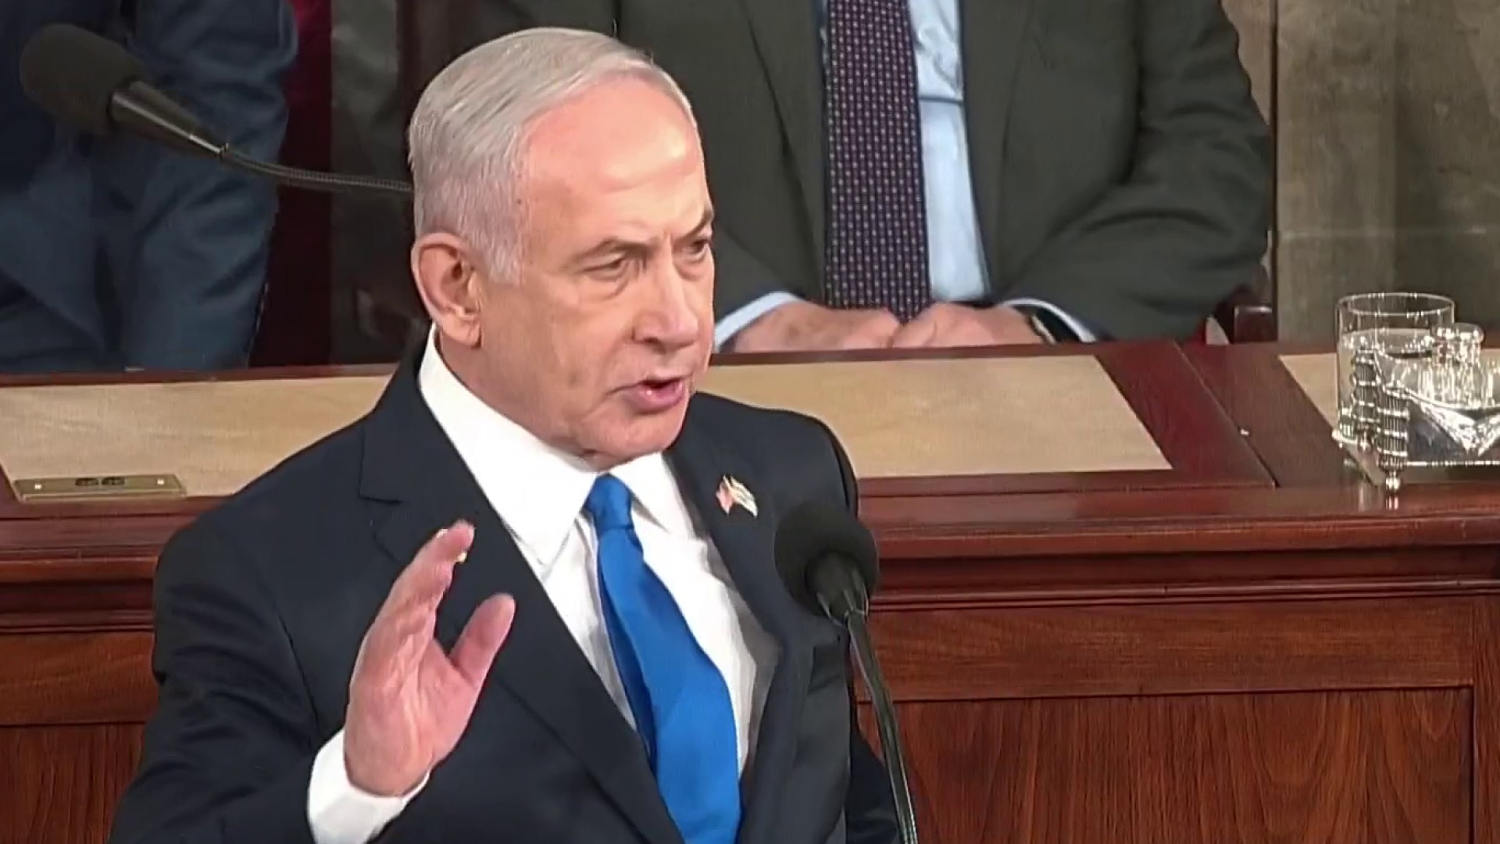 Netanyahu thanks President Biden for 'heartfelt support of Israel'